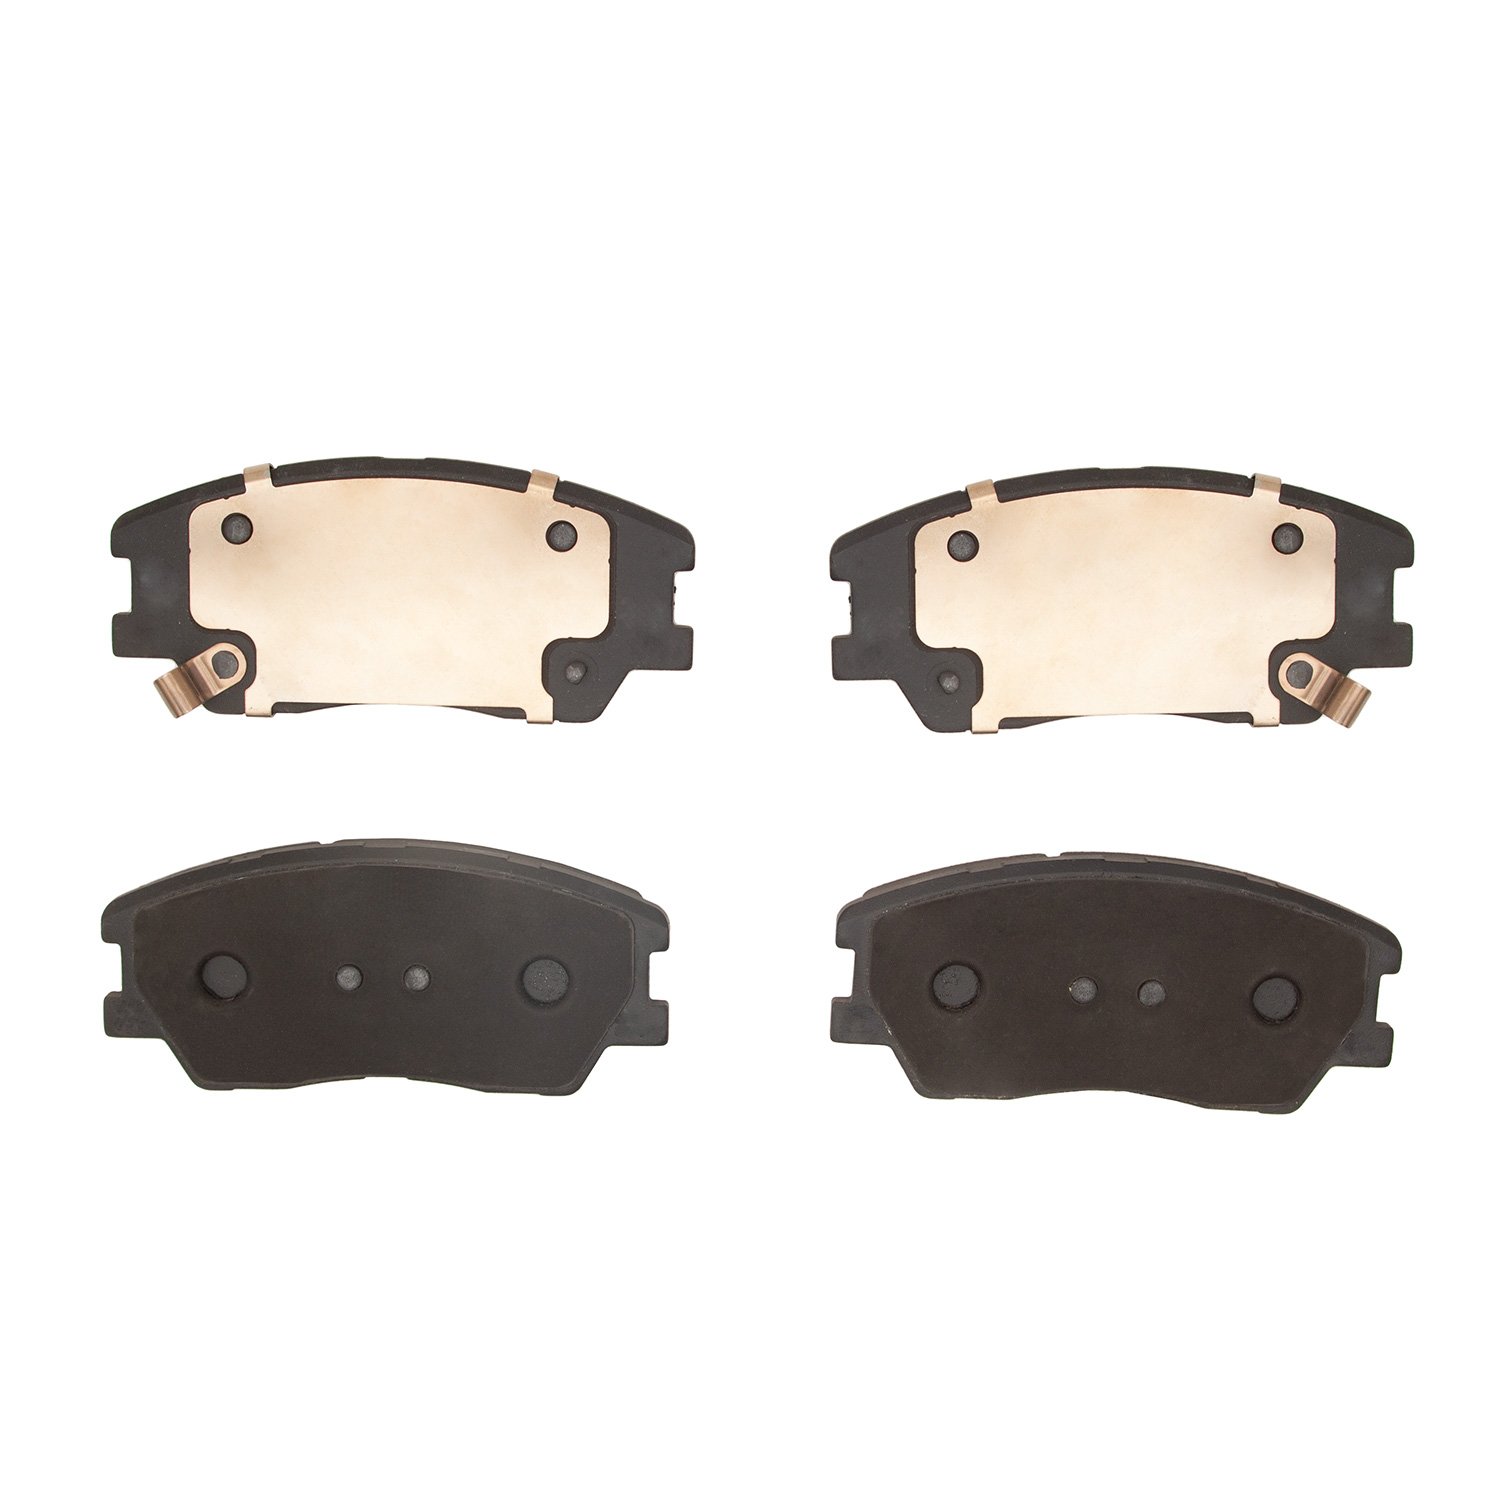 1310-2287-00 3000-Series Ceramic Brake Pads, Fits Select Kia/Hyundai/Genesis, Position: Front